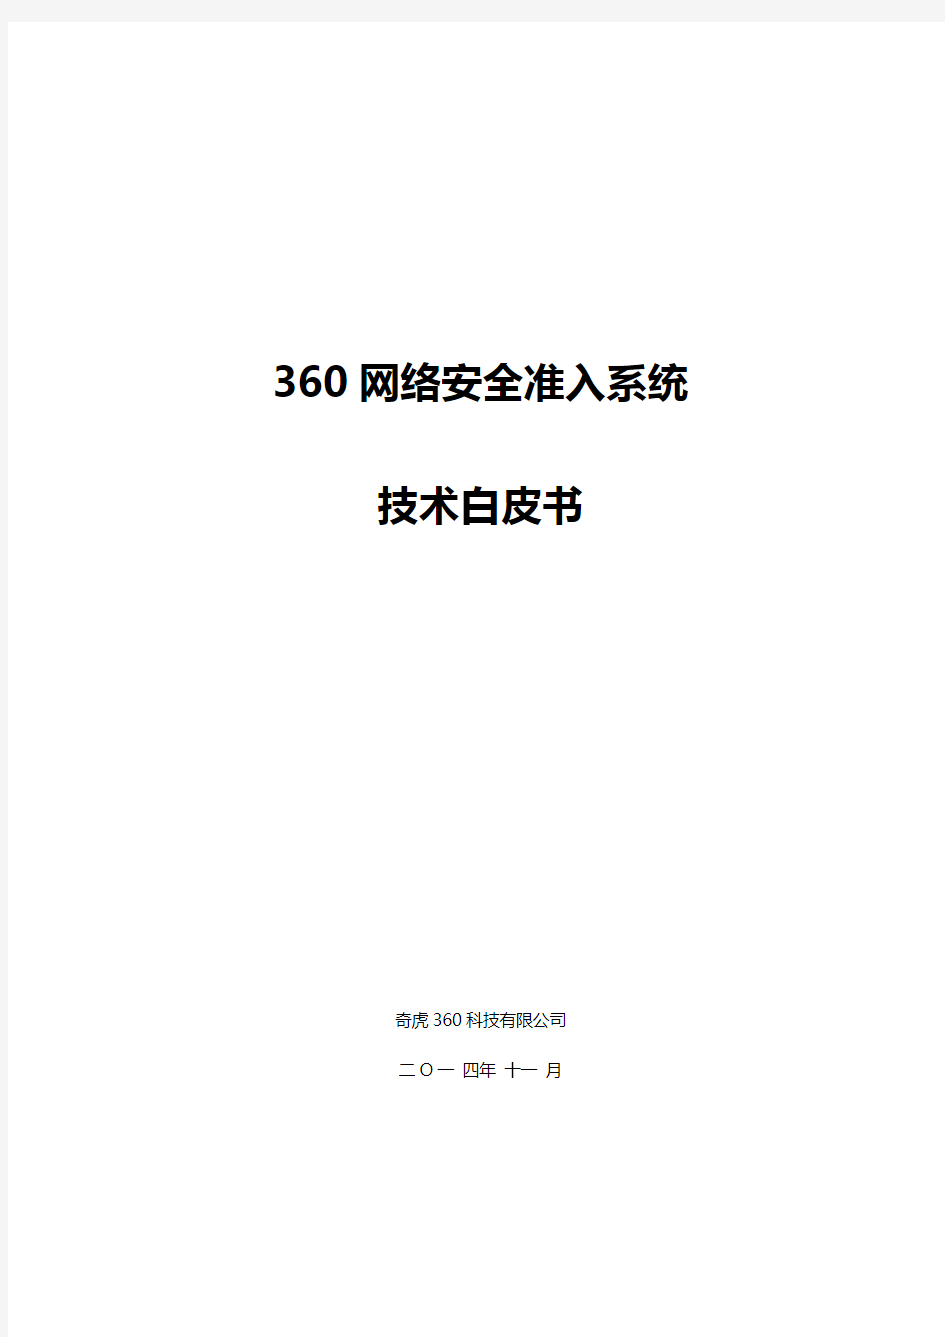 360网络安全准入系统技术白皮书-V1.3